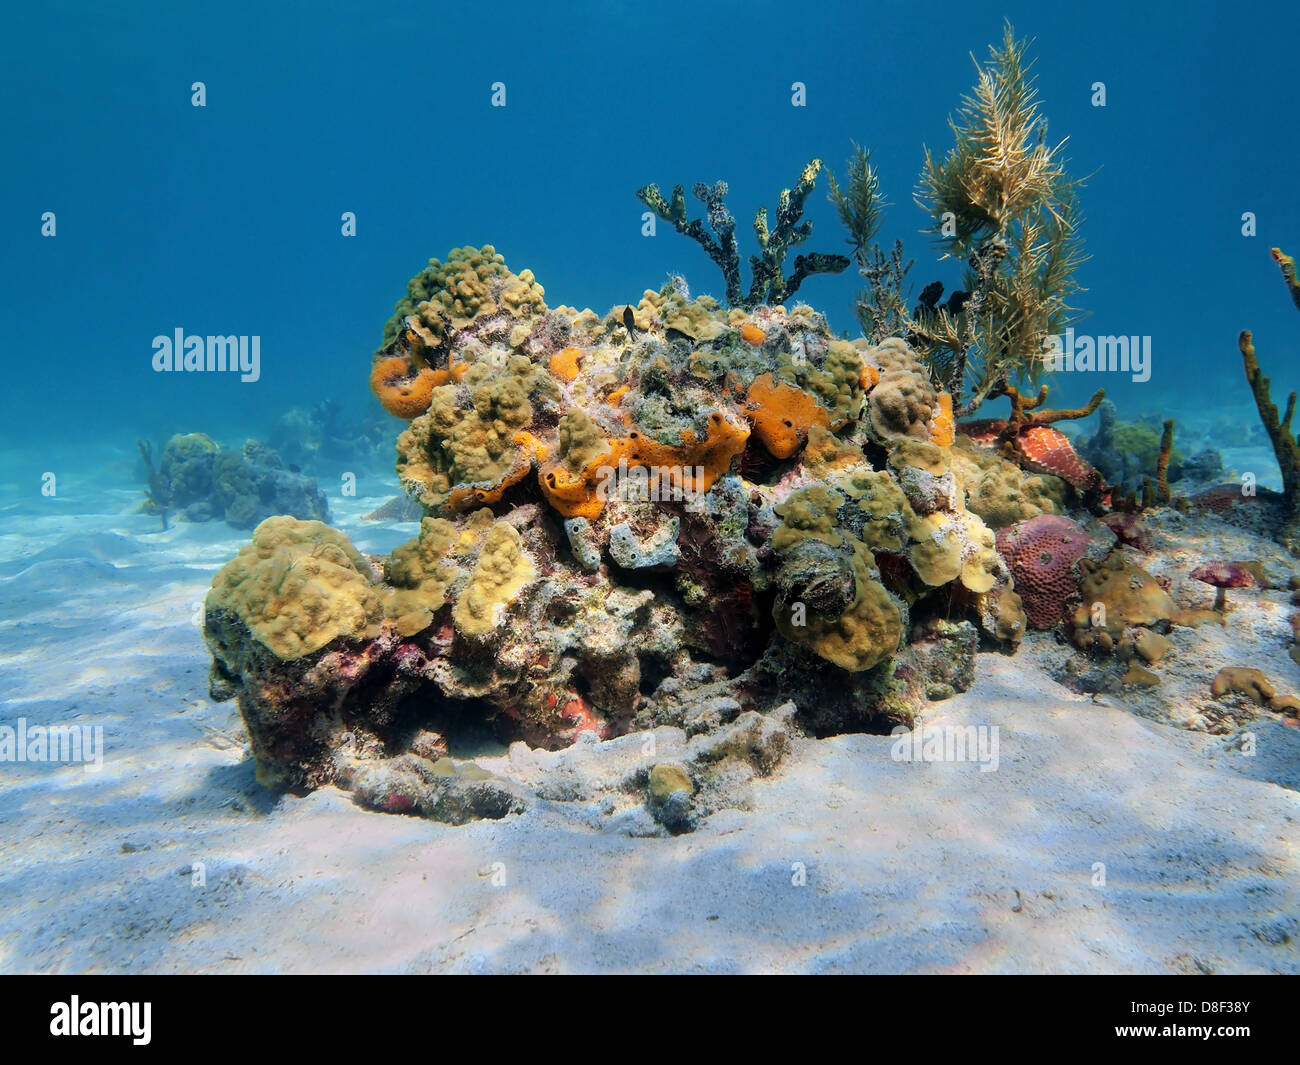 La vie marine colorée sous l'eau sur une plage de sable fin, des fonds marins de la mer des Caraïbes, le Panama Banque D'Images